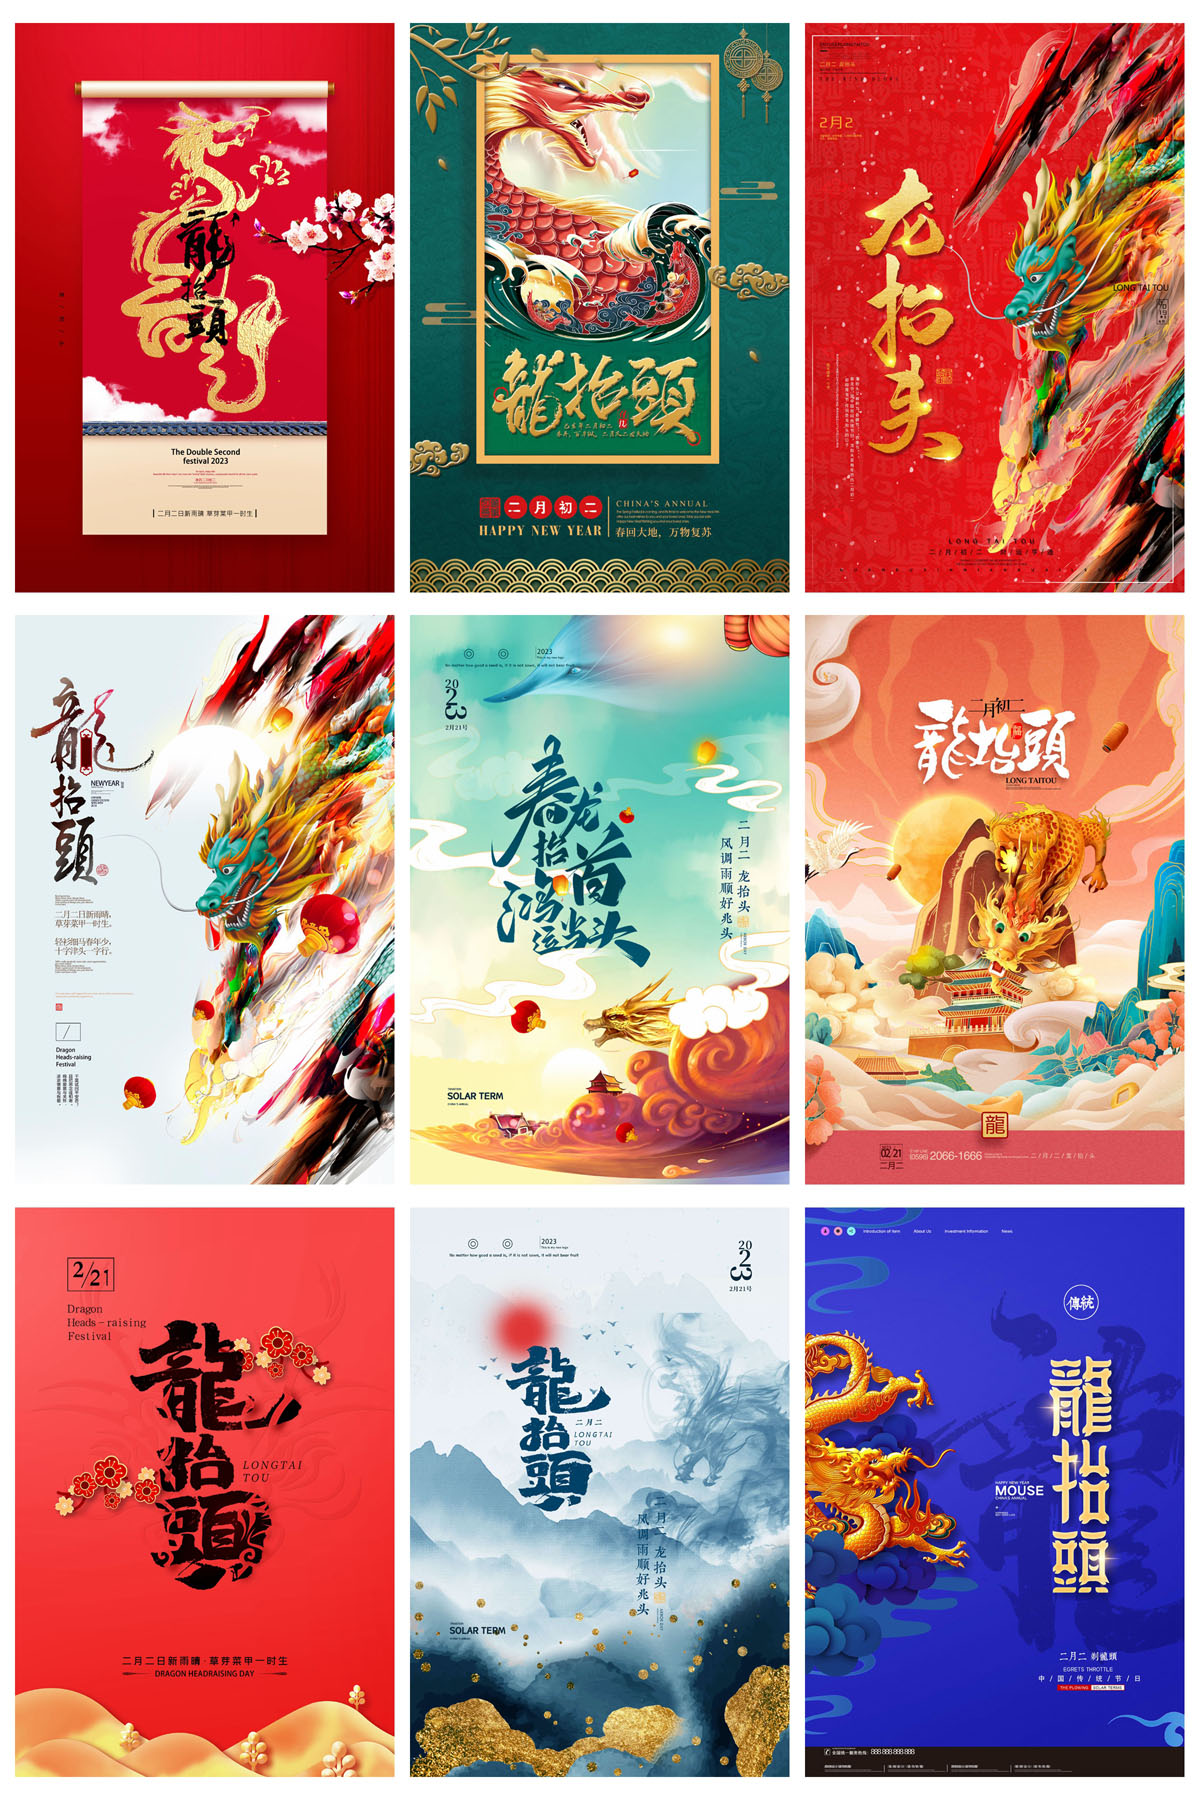 40款二月二龙抬头中国风宣传海报PSD模板 设计素材 第8张